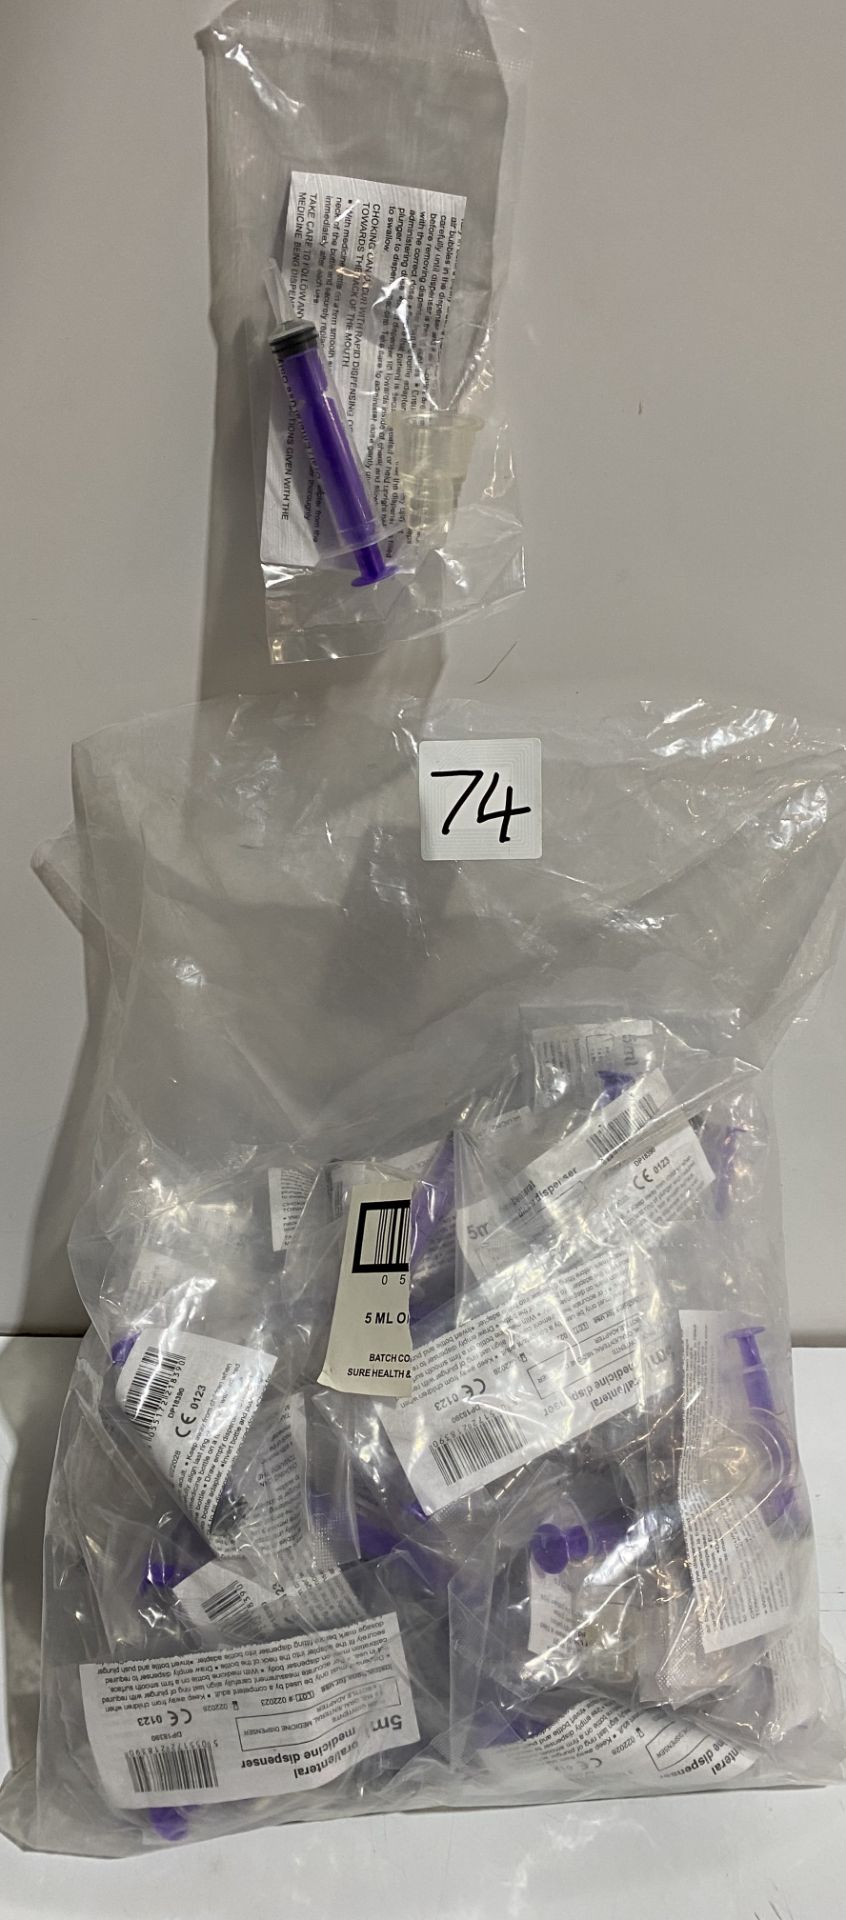 40 x Oral medicine fluids dispenser syringes with bottle adapter - Exp Feb 2028